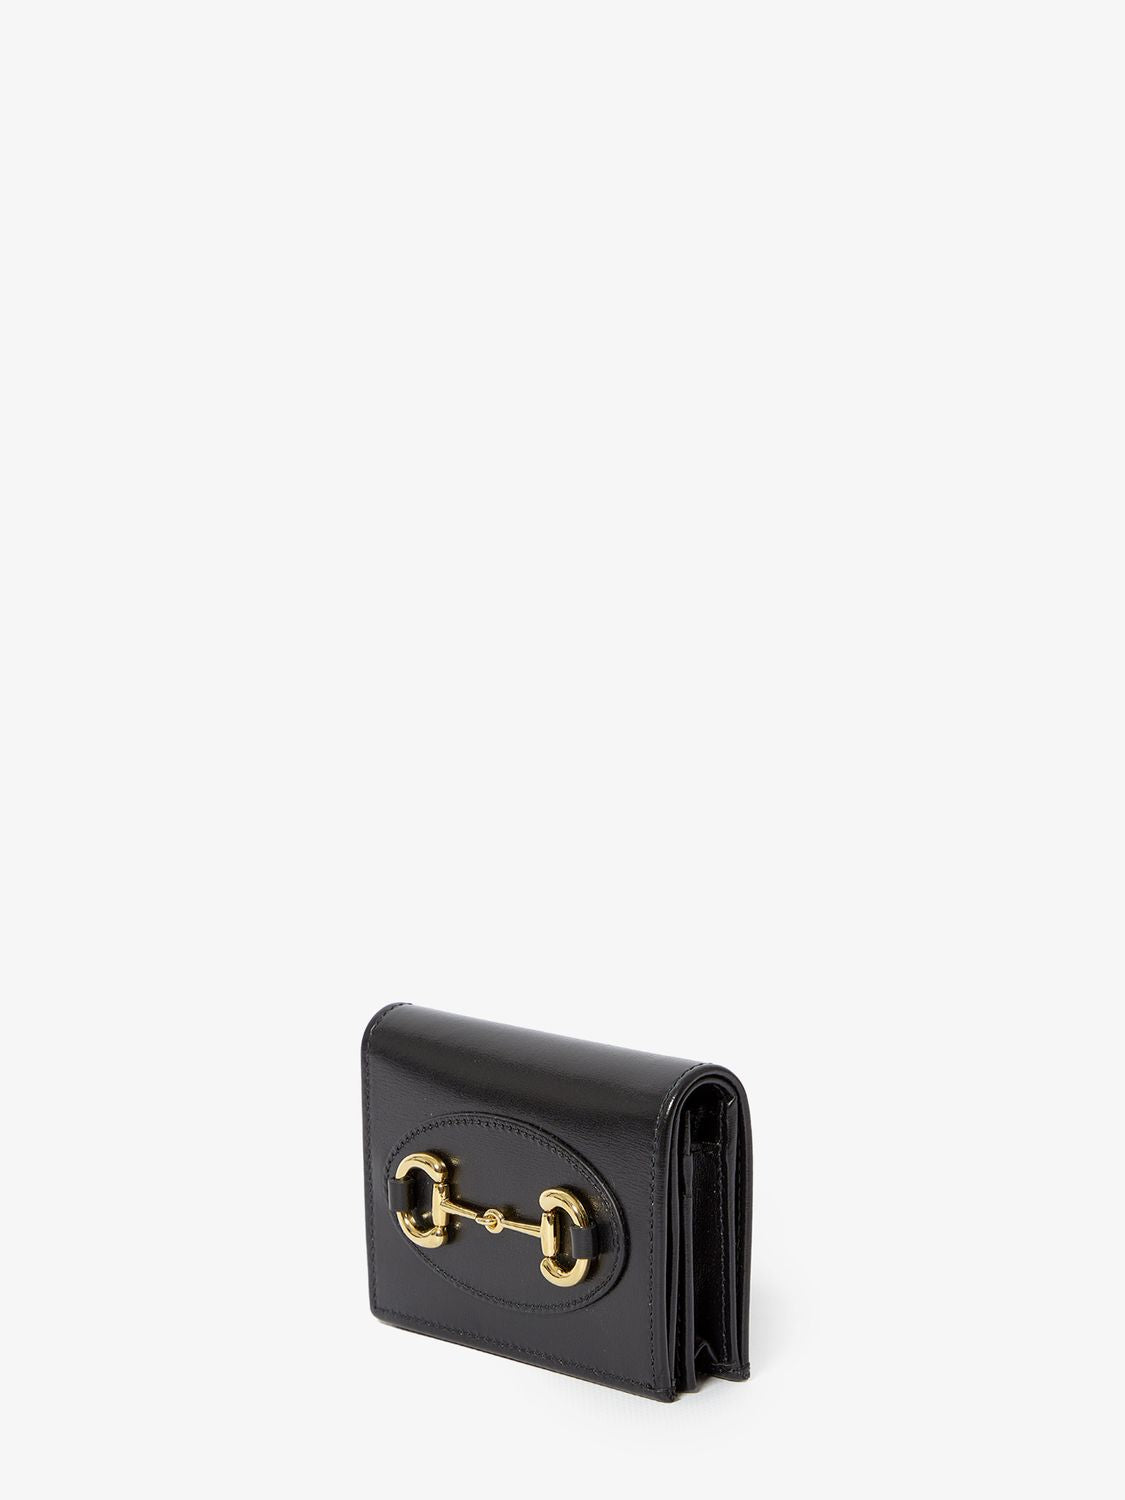 黑色高档真皮钱包，配以标志性的金色图案